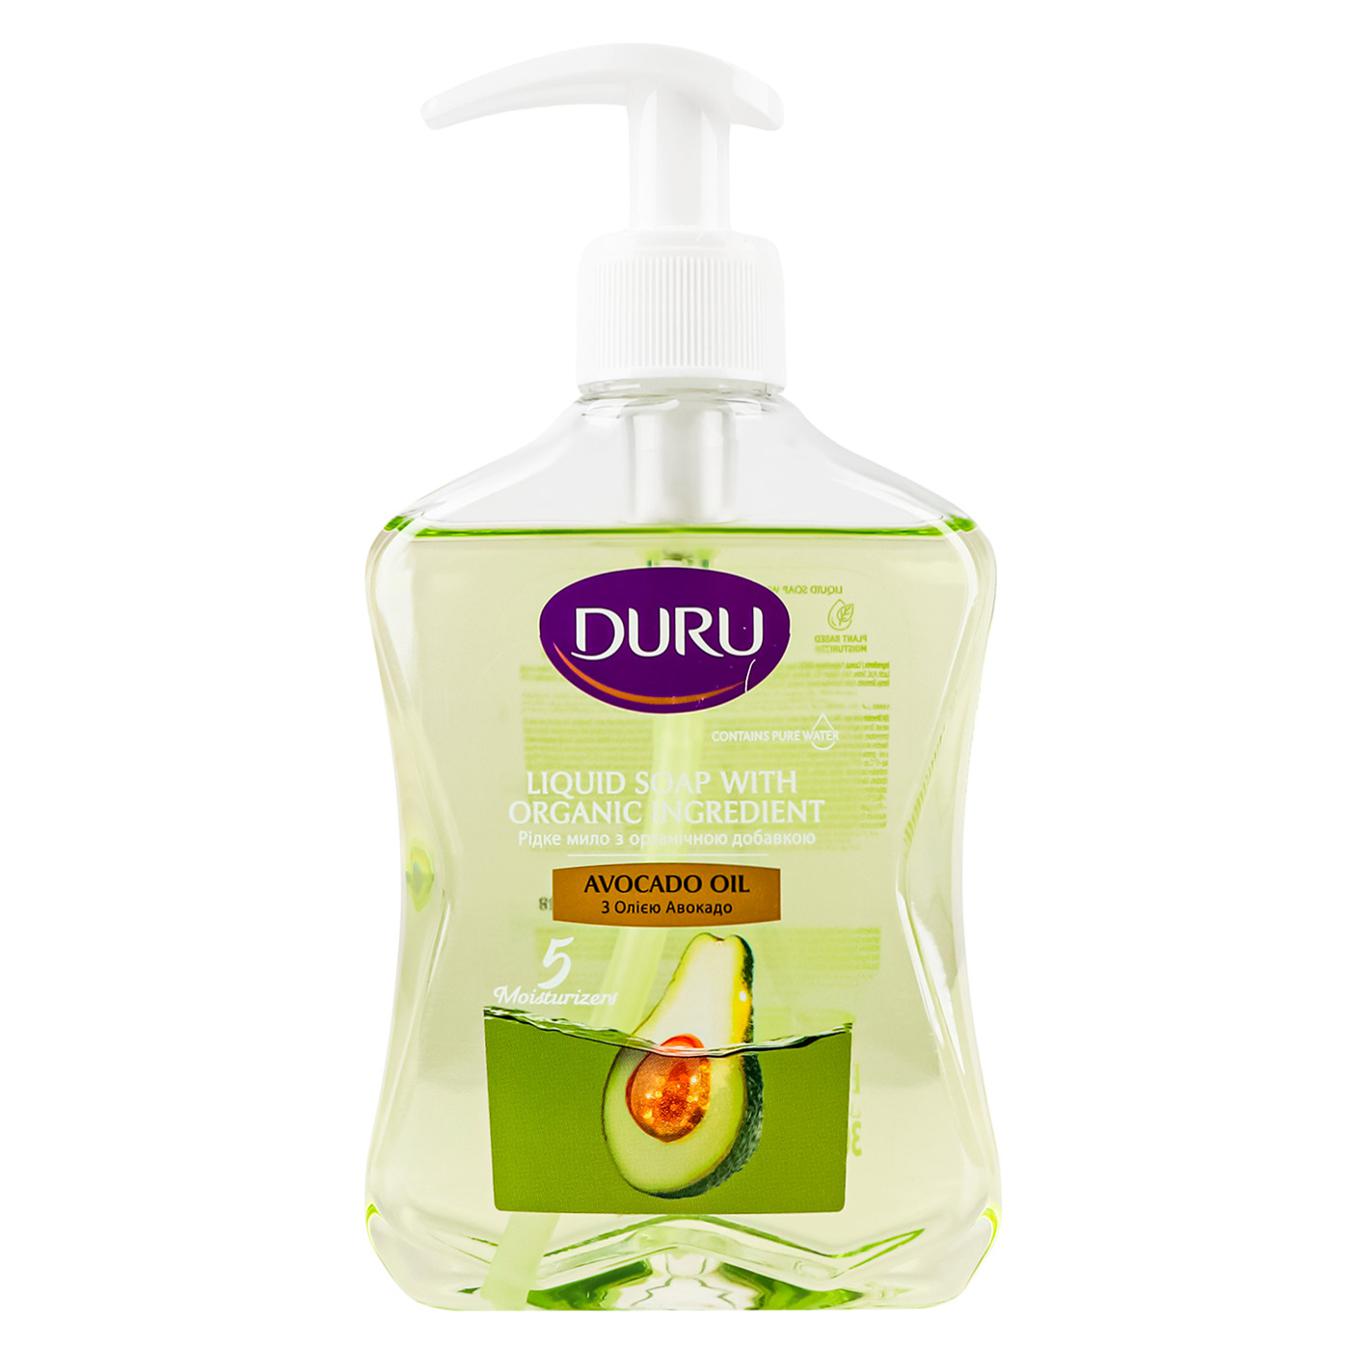 Duru liquid soap with avocado oil 300 ml